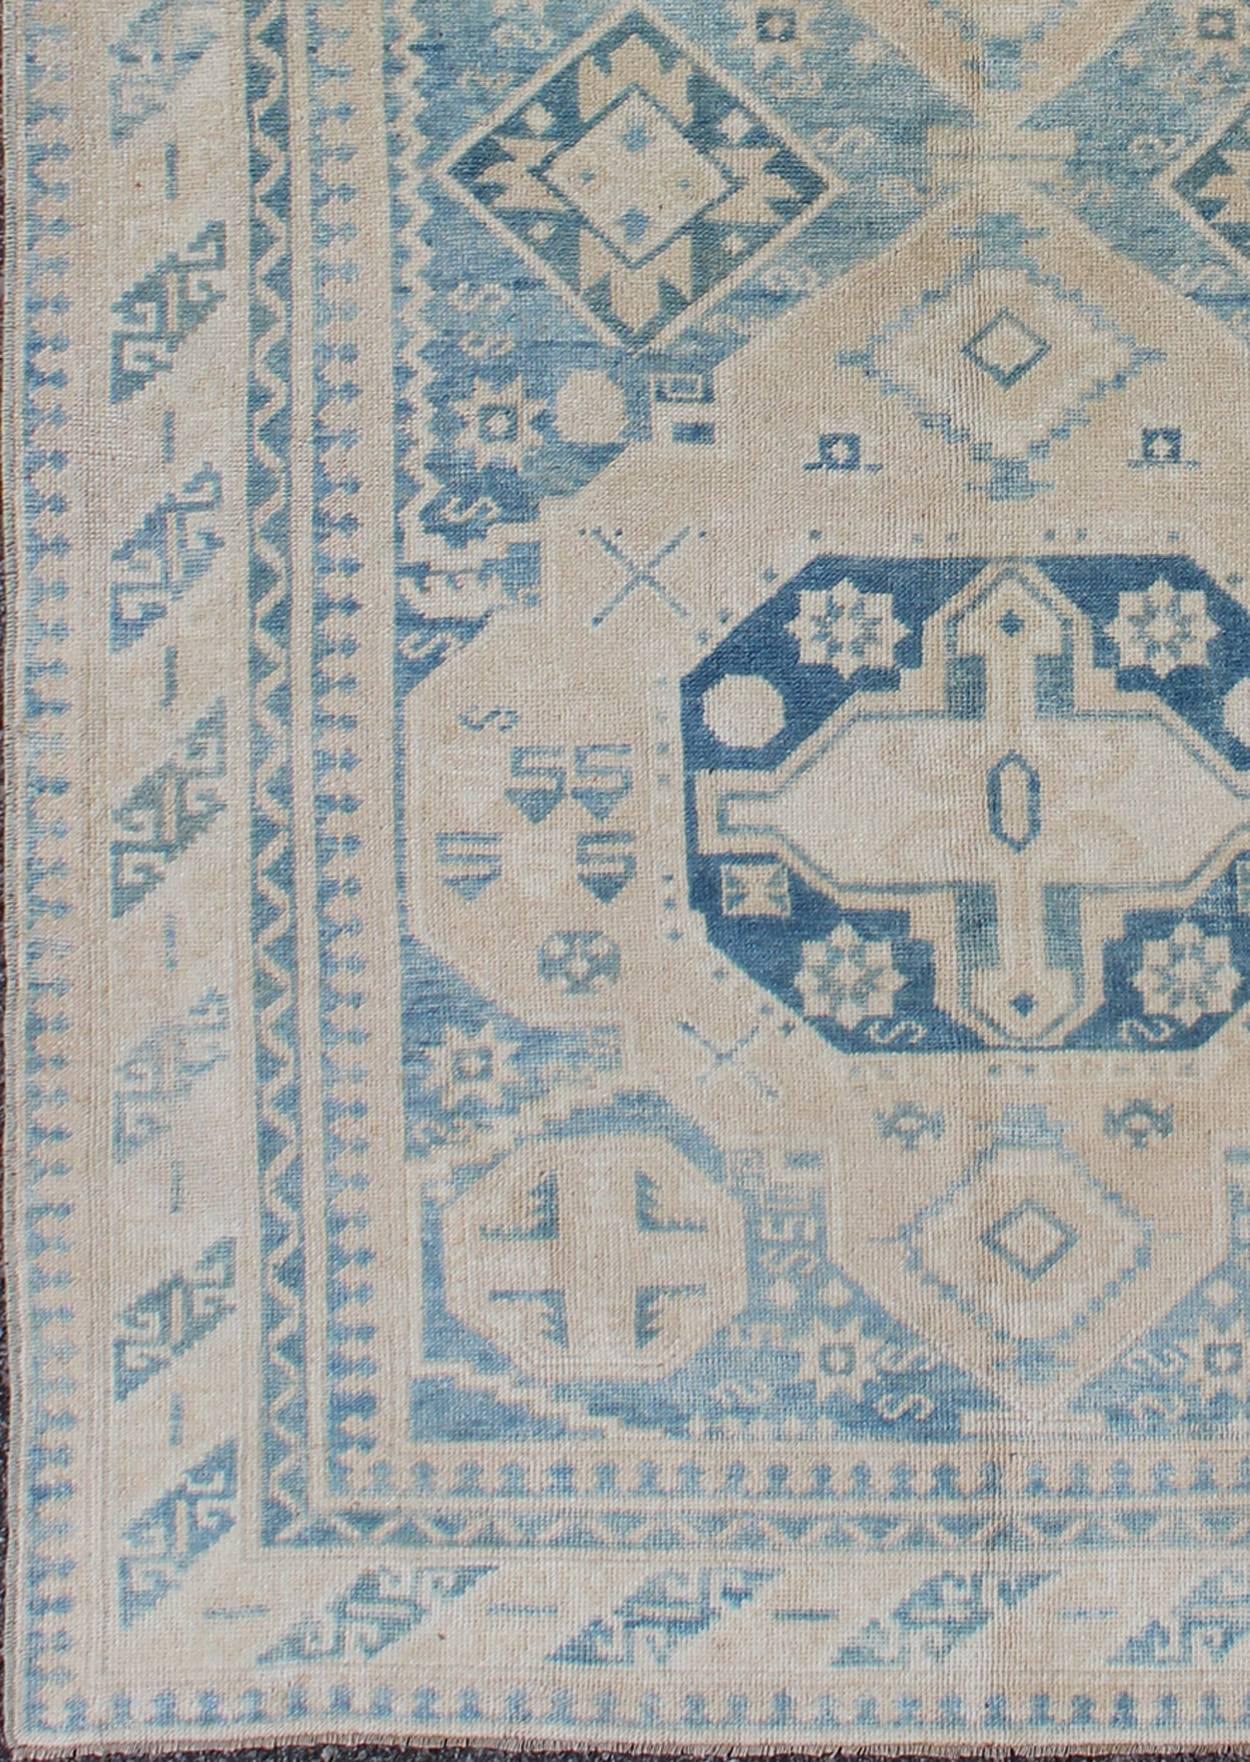 Blauer und hellbrauner türkischer Oushak-Teppich mit geometrischen Doppelmedaillons, Teppich tu-mtu-136618, Herkunftsland / Art: Türkei / Oushak, um 1940

Dieser alte türkische Oushak-Teppich (ca. Mitte des 20. Jahrhunderts) zeigt ein zentrales